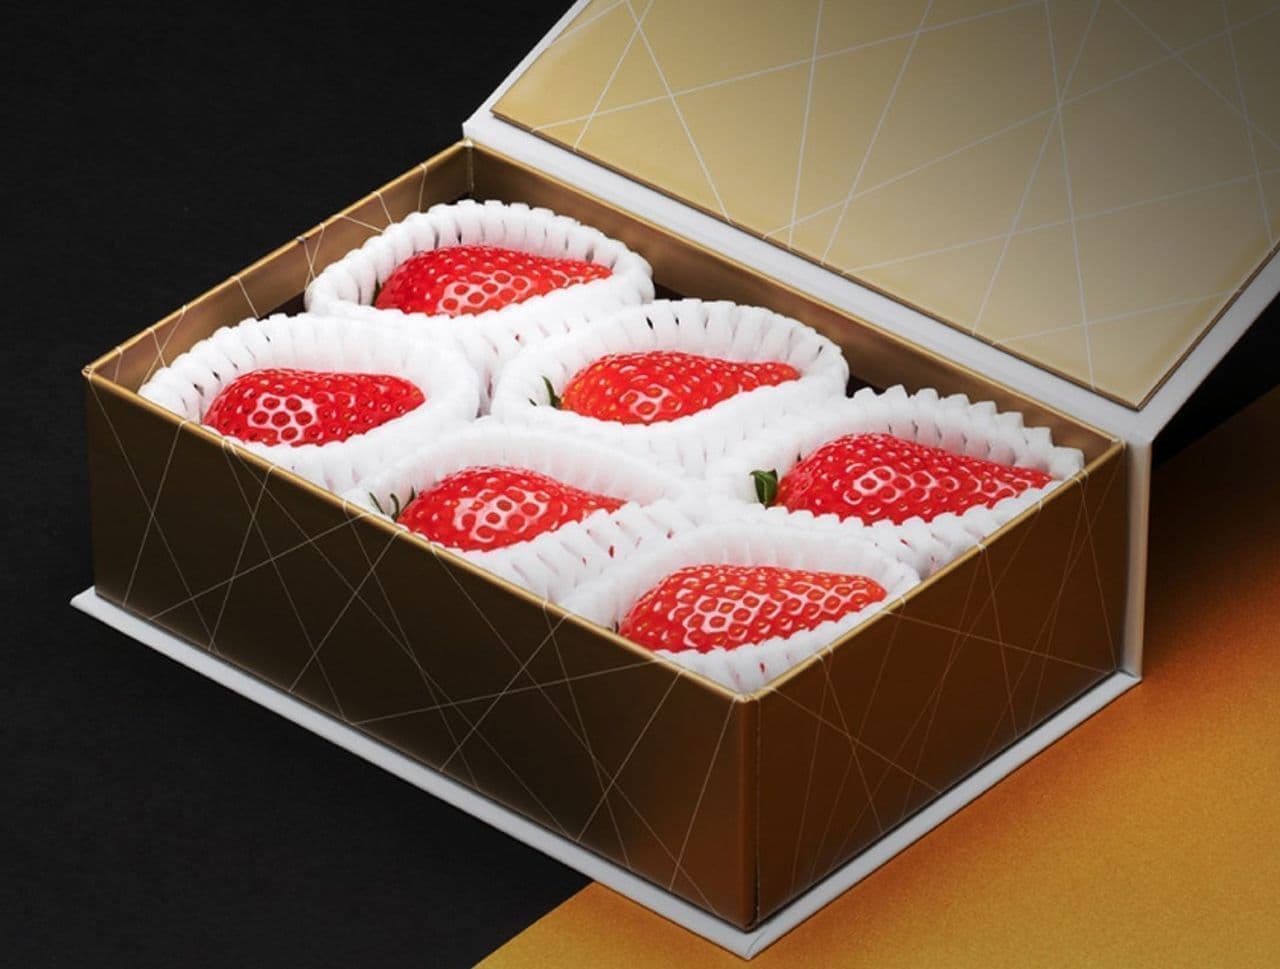 Shinshin Farm's specially selected strawberries "Manakokoro